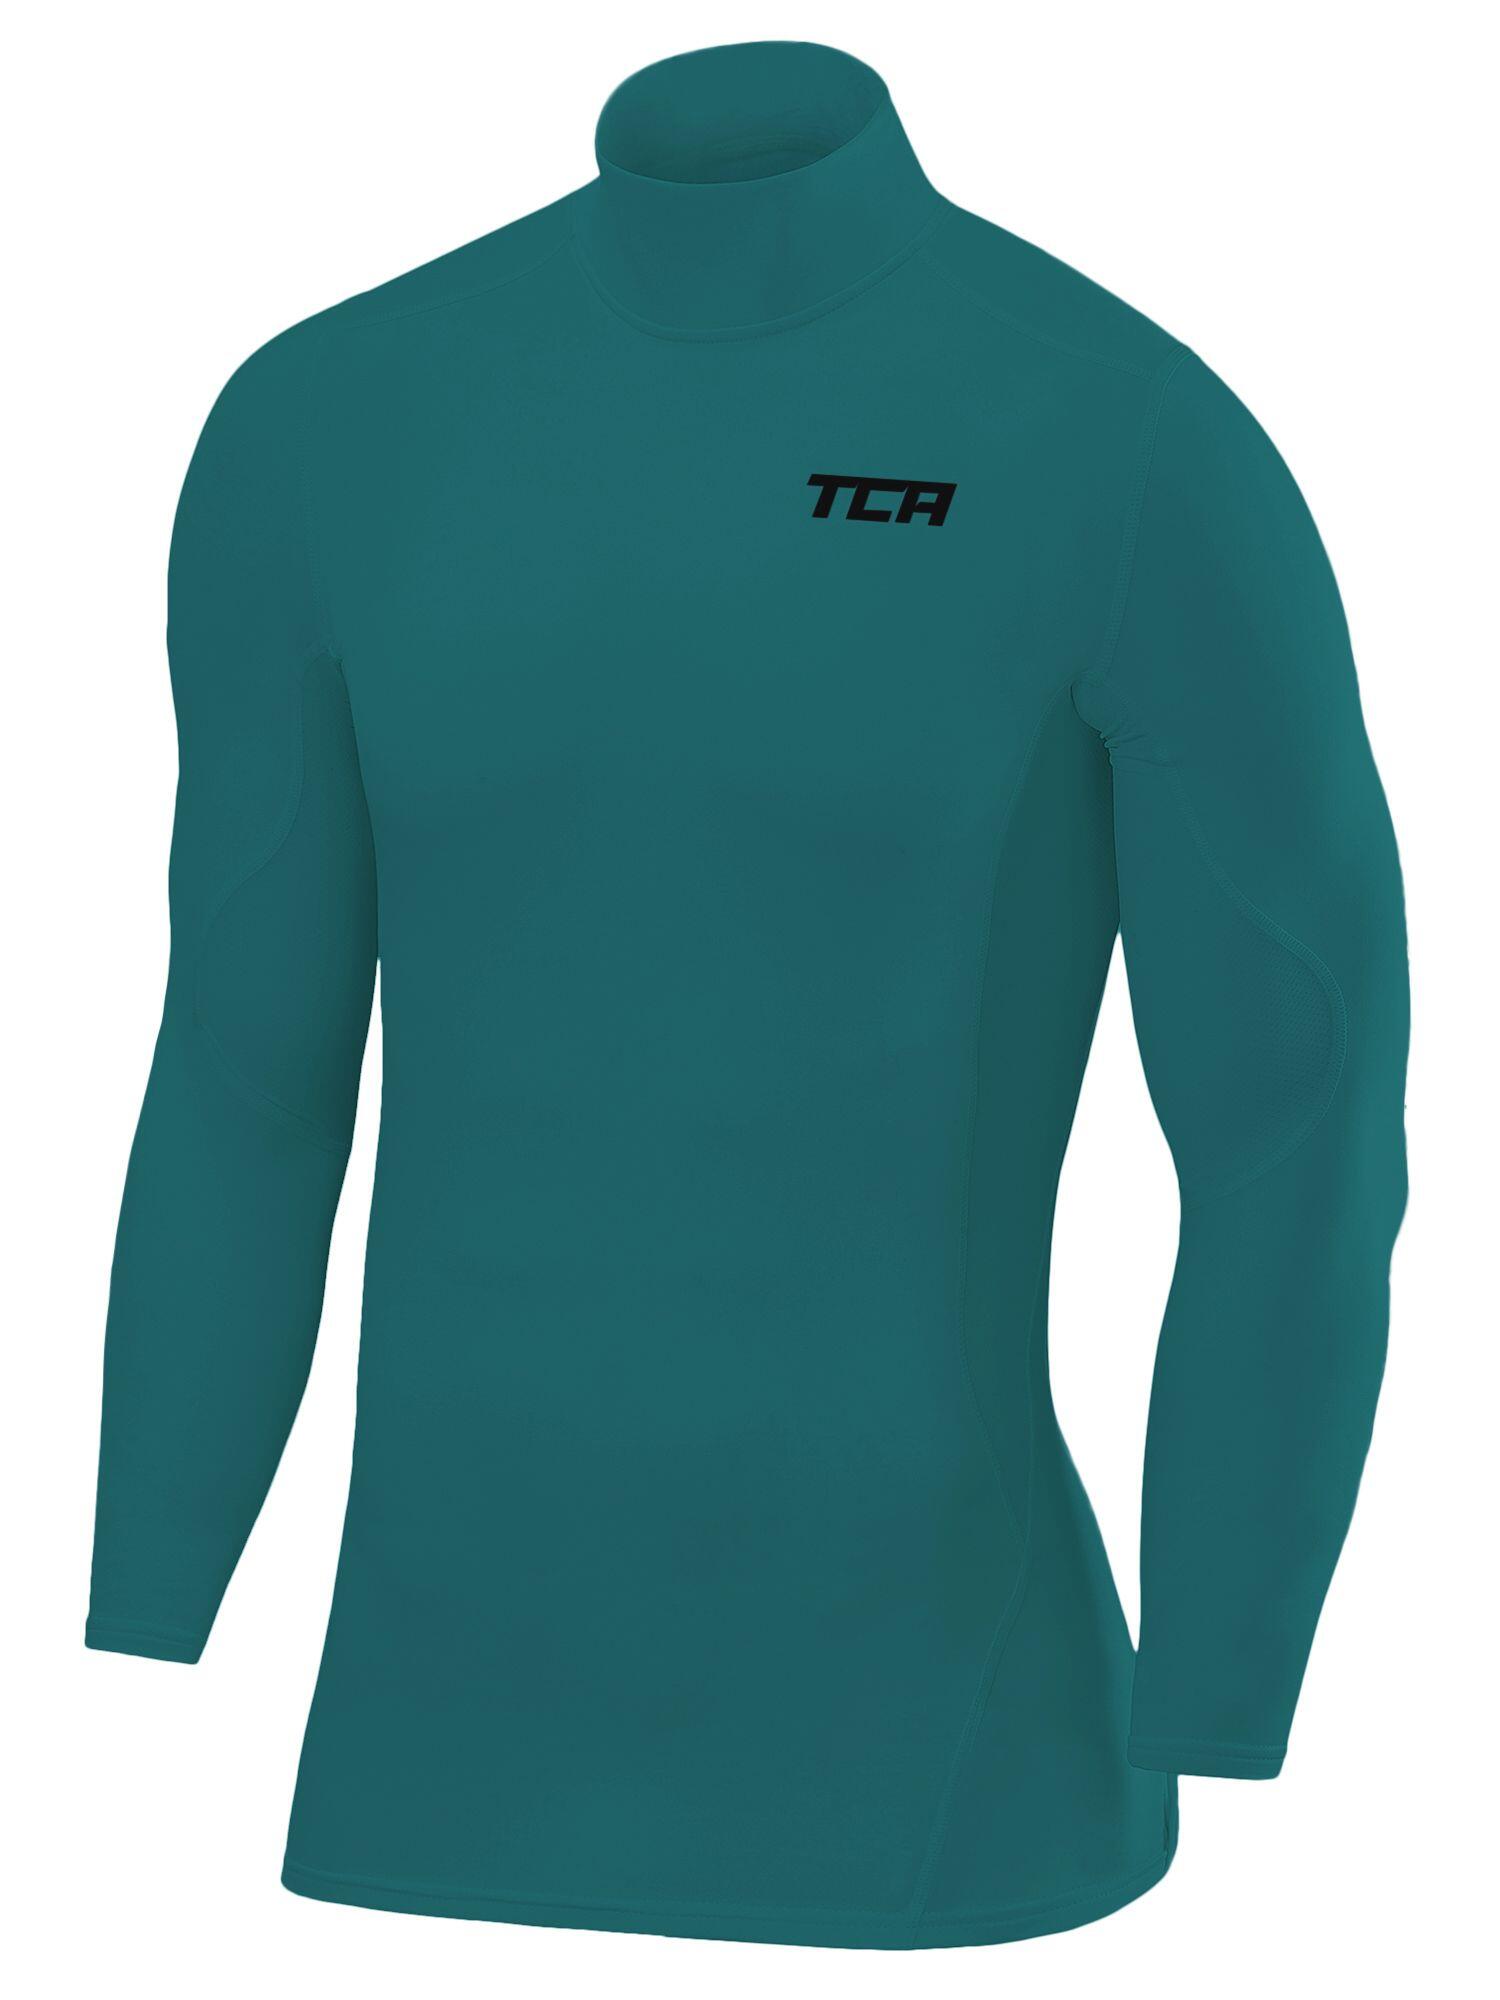 TCA Men's Super Thermal Compression Top - Mock - Cadmium Green